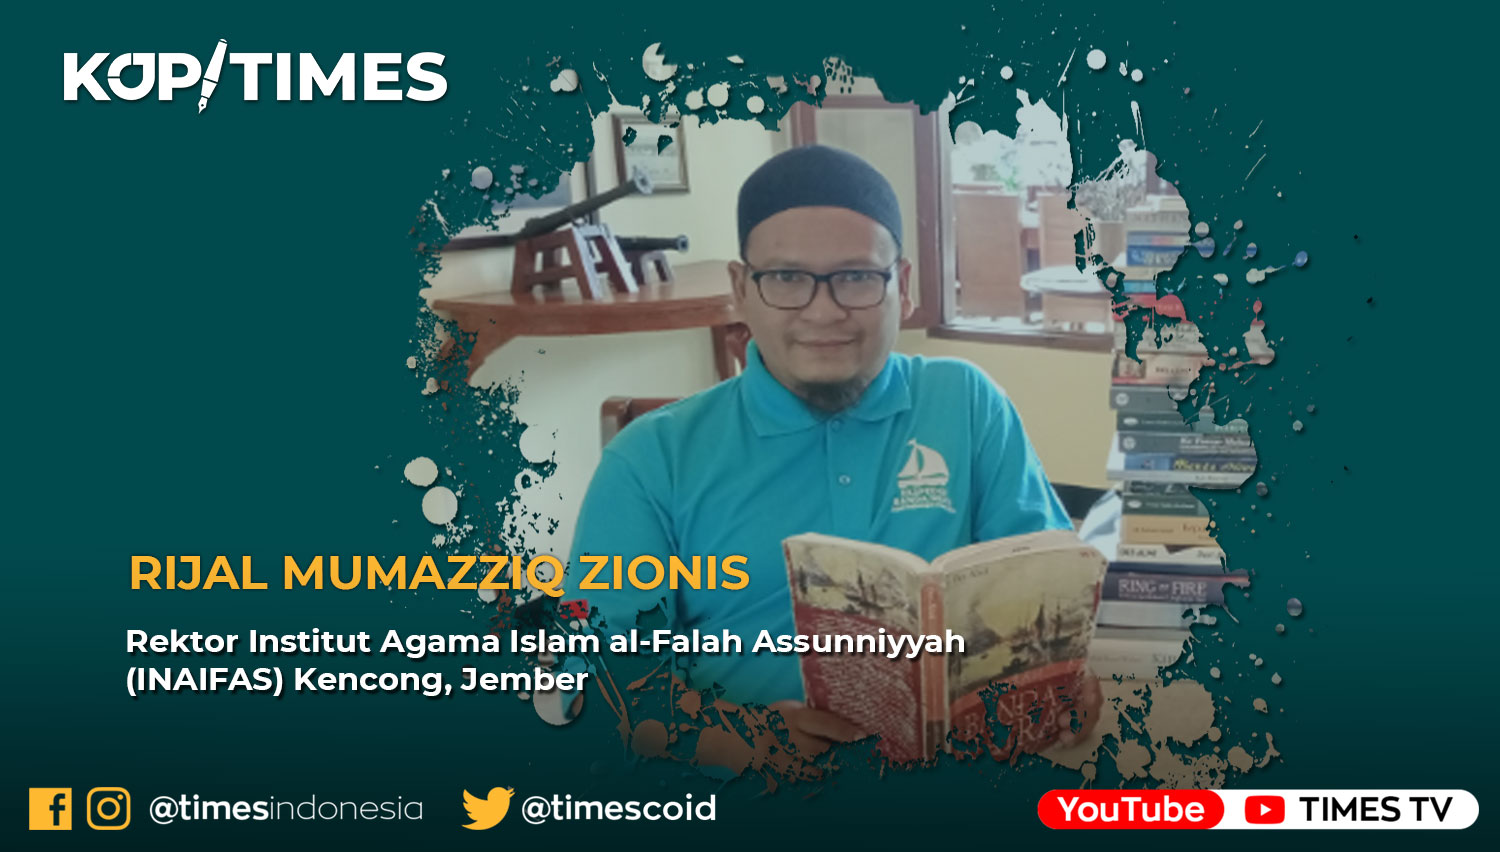 Rijal Mumazziq Zionis adalah Rektor Institut Agama Islam al-Falah Assunniyyah (INAIFAS) Kencong, Jember dan pecinta buku.